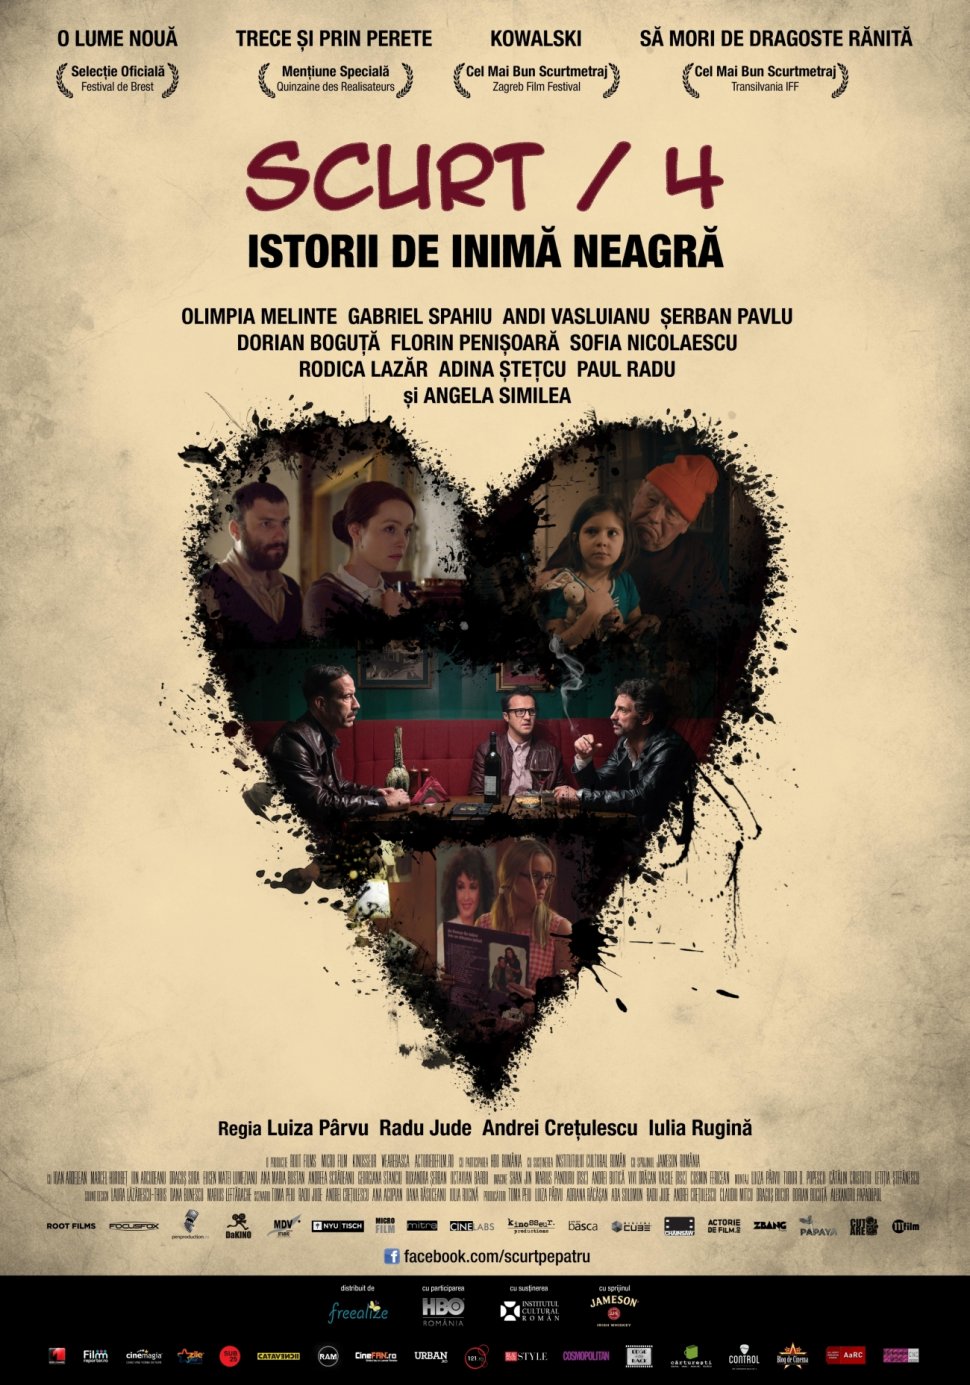 Omnibusul Scurt/4: Istorii de inimă neagră – din 28 noiembrie în cinematografele din toată țara